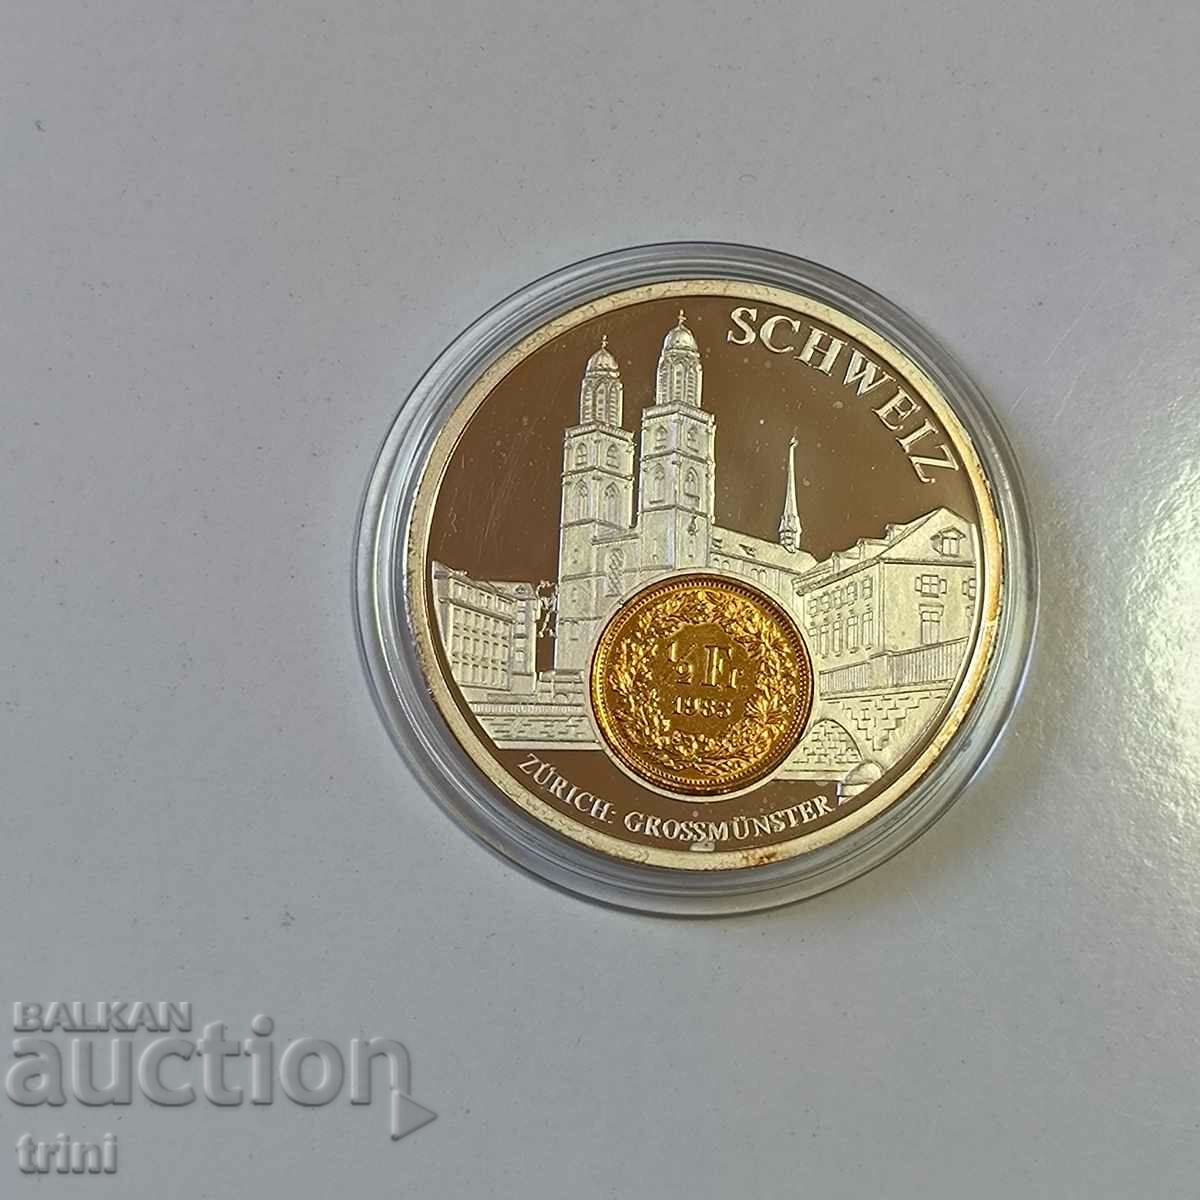 ELVETIA, Zurich - Placa moneda europeana